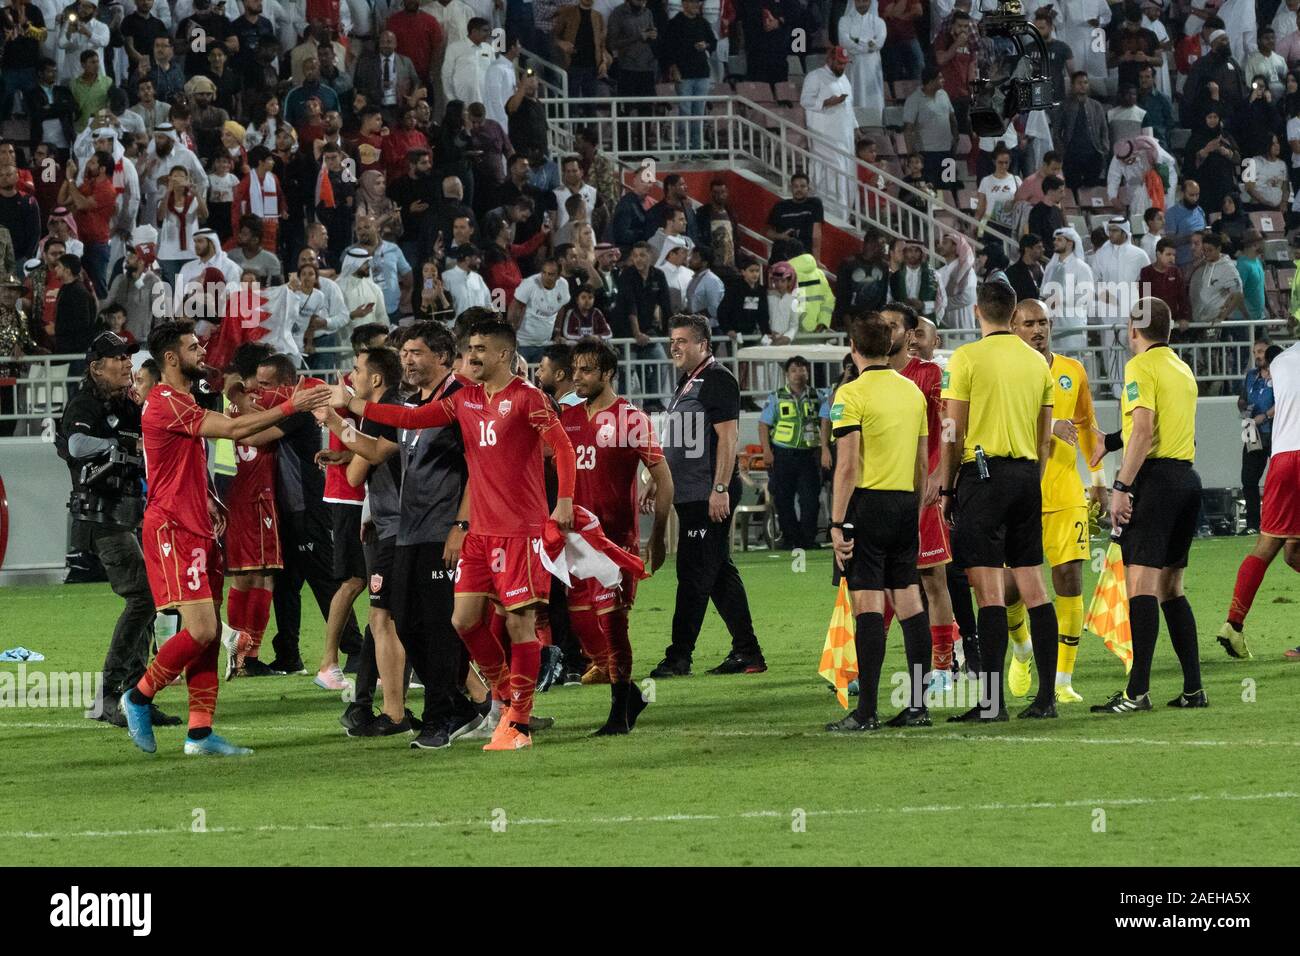 Bahrain National Football team di giocatori per celebrare la loro vittoria nel Golfo finale di coppa. Il Bahrein ha vinto il Golfo Arabico Cup titolo per la prima volta con una vittoria 1-0 sopra l'Arabia Saudita nella finale di domenica. Bahrain lo scorso ha raggiunto la finale nel 2004. I sauditi stavano cercando di sollevare il titolo per la quarta volta. Durante la competizione la fase di gruppo, Bahrain aveva perso 0-2 in Arabia Saudita. Foto Stock